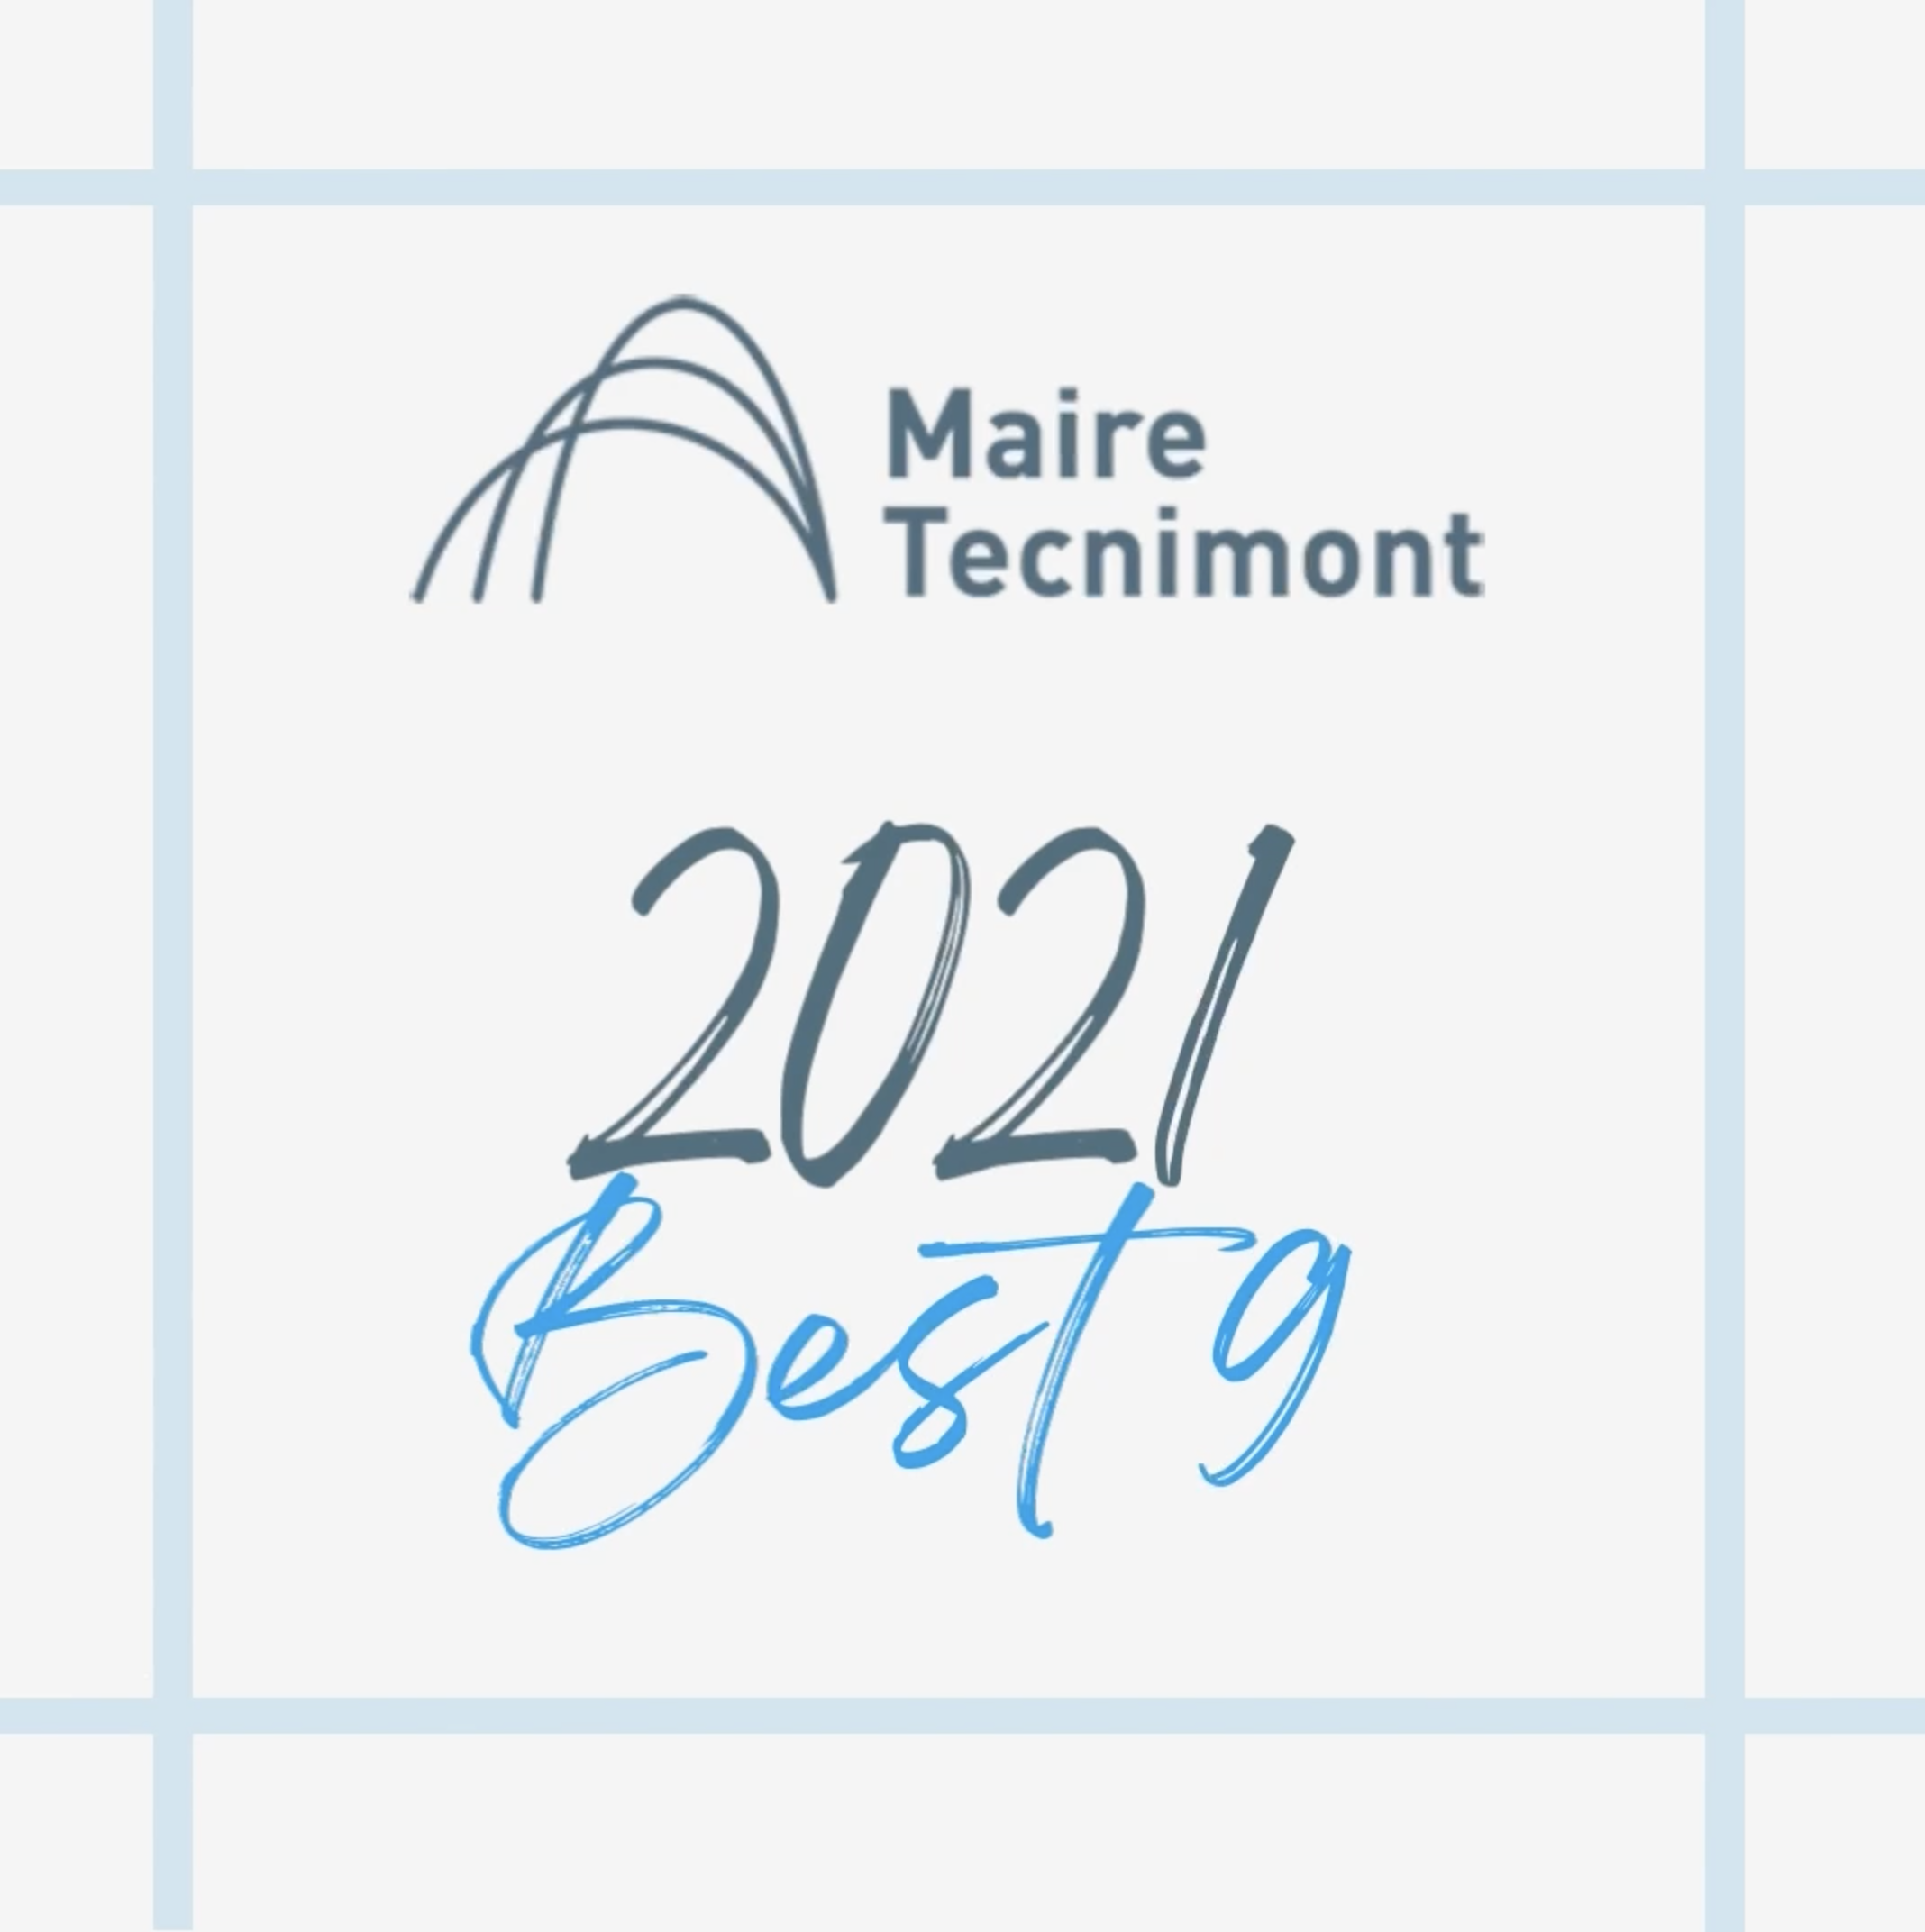 Maire Tecnimont 2021 BEST9